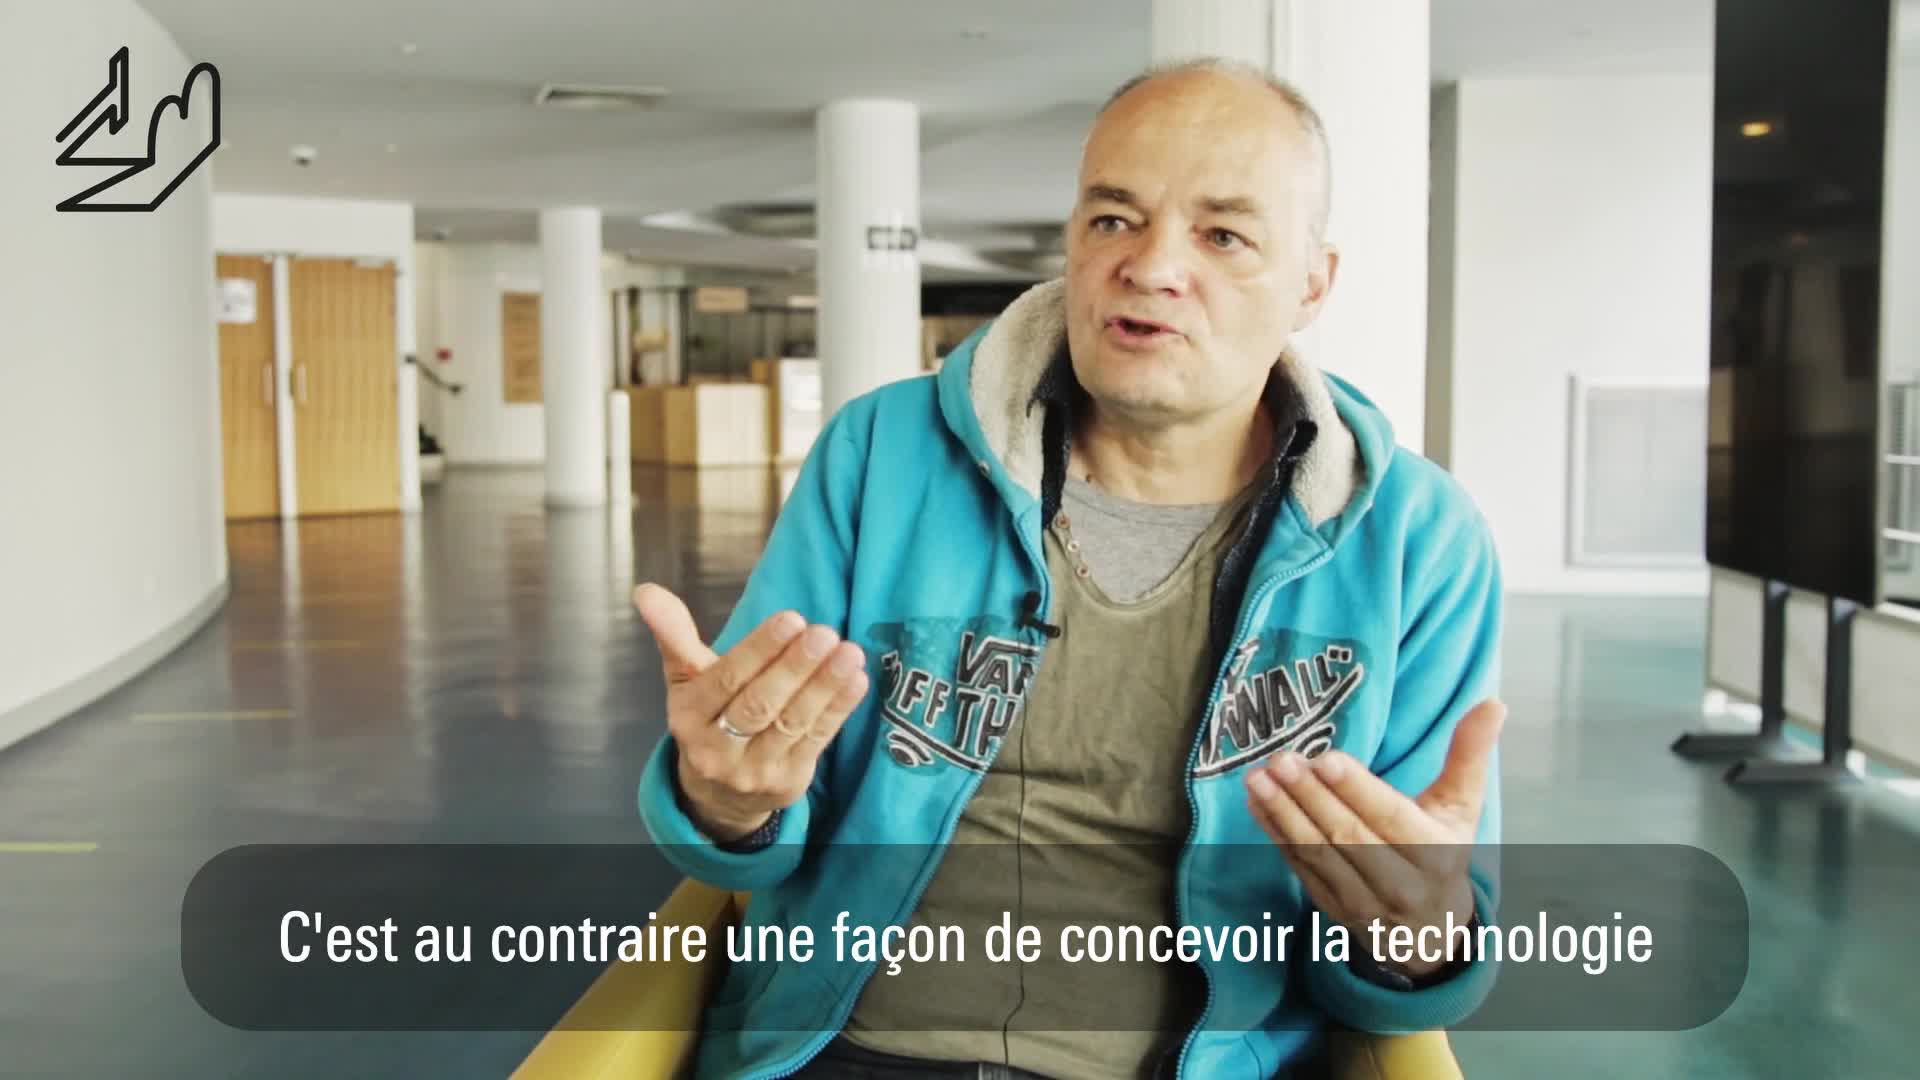 Vidéo "Derrière tes paupières" - Entretien avec Pierre-Yves Chapalain